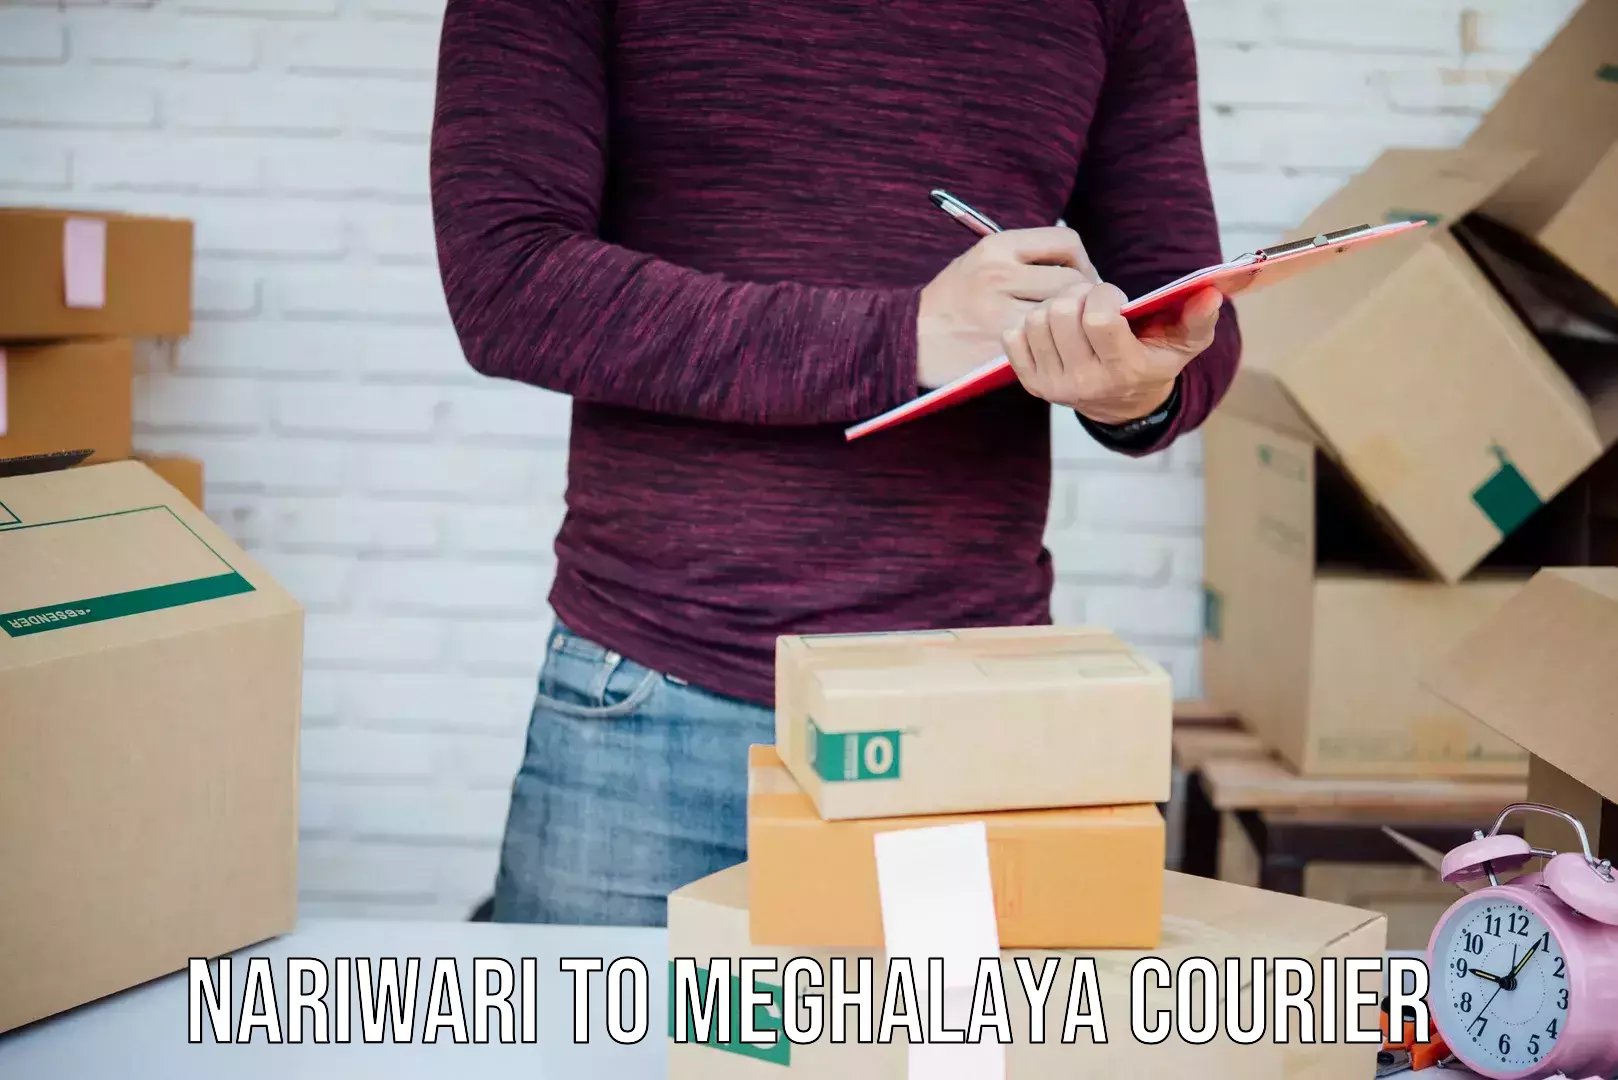 Digital courier platforms Nariwari to Phulbari